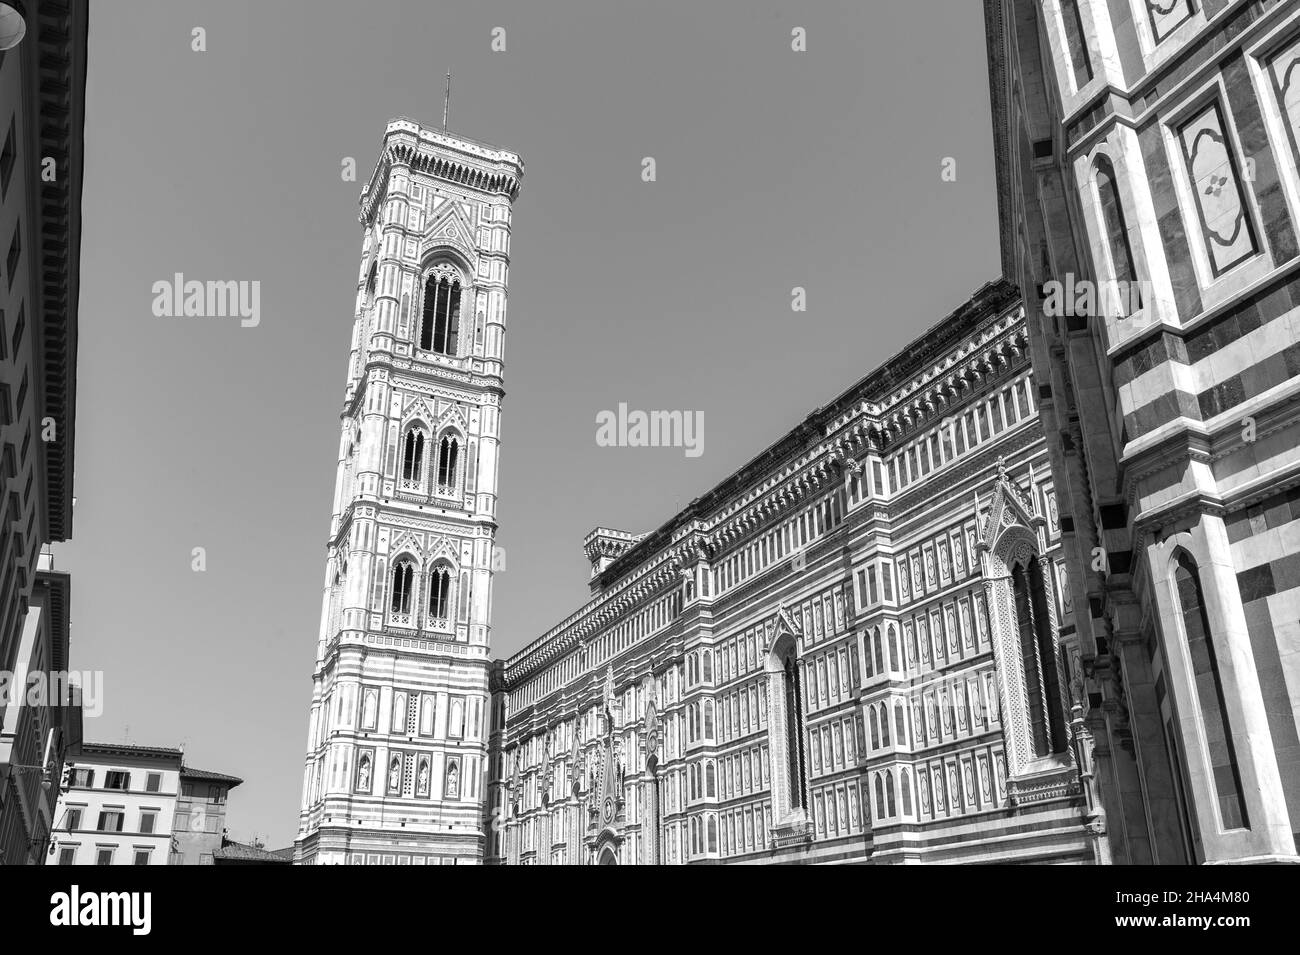 cathédrale de florence, anciennement la cattedrale di santa maria del fiore et le campanile de giotto. toscane, italie Banque D'Images